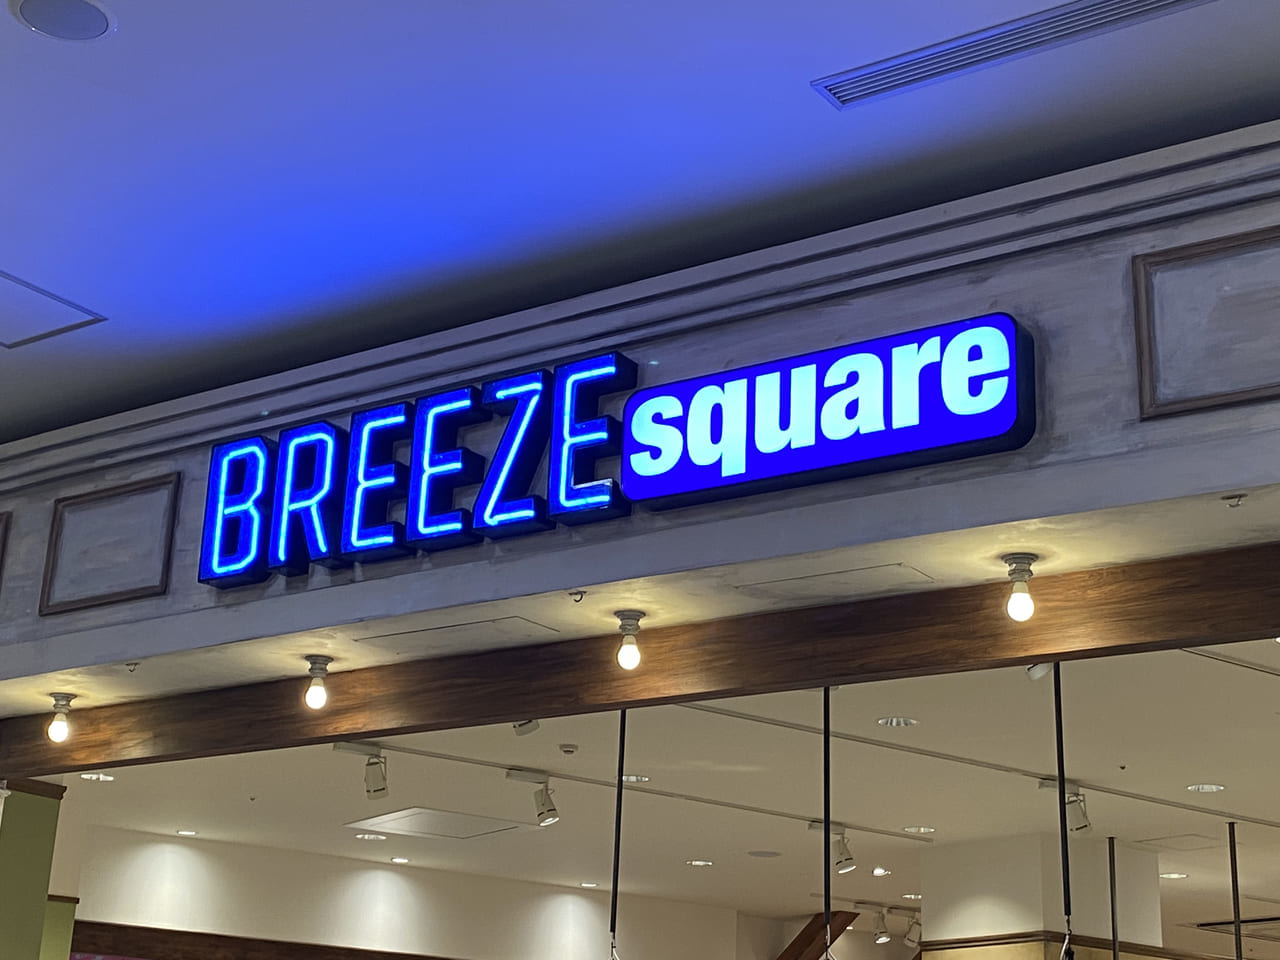 BREEZE Square（ブリーズスクエア）」